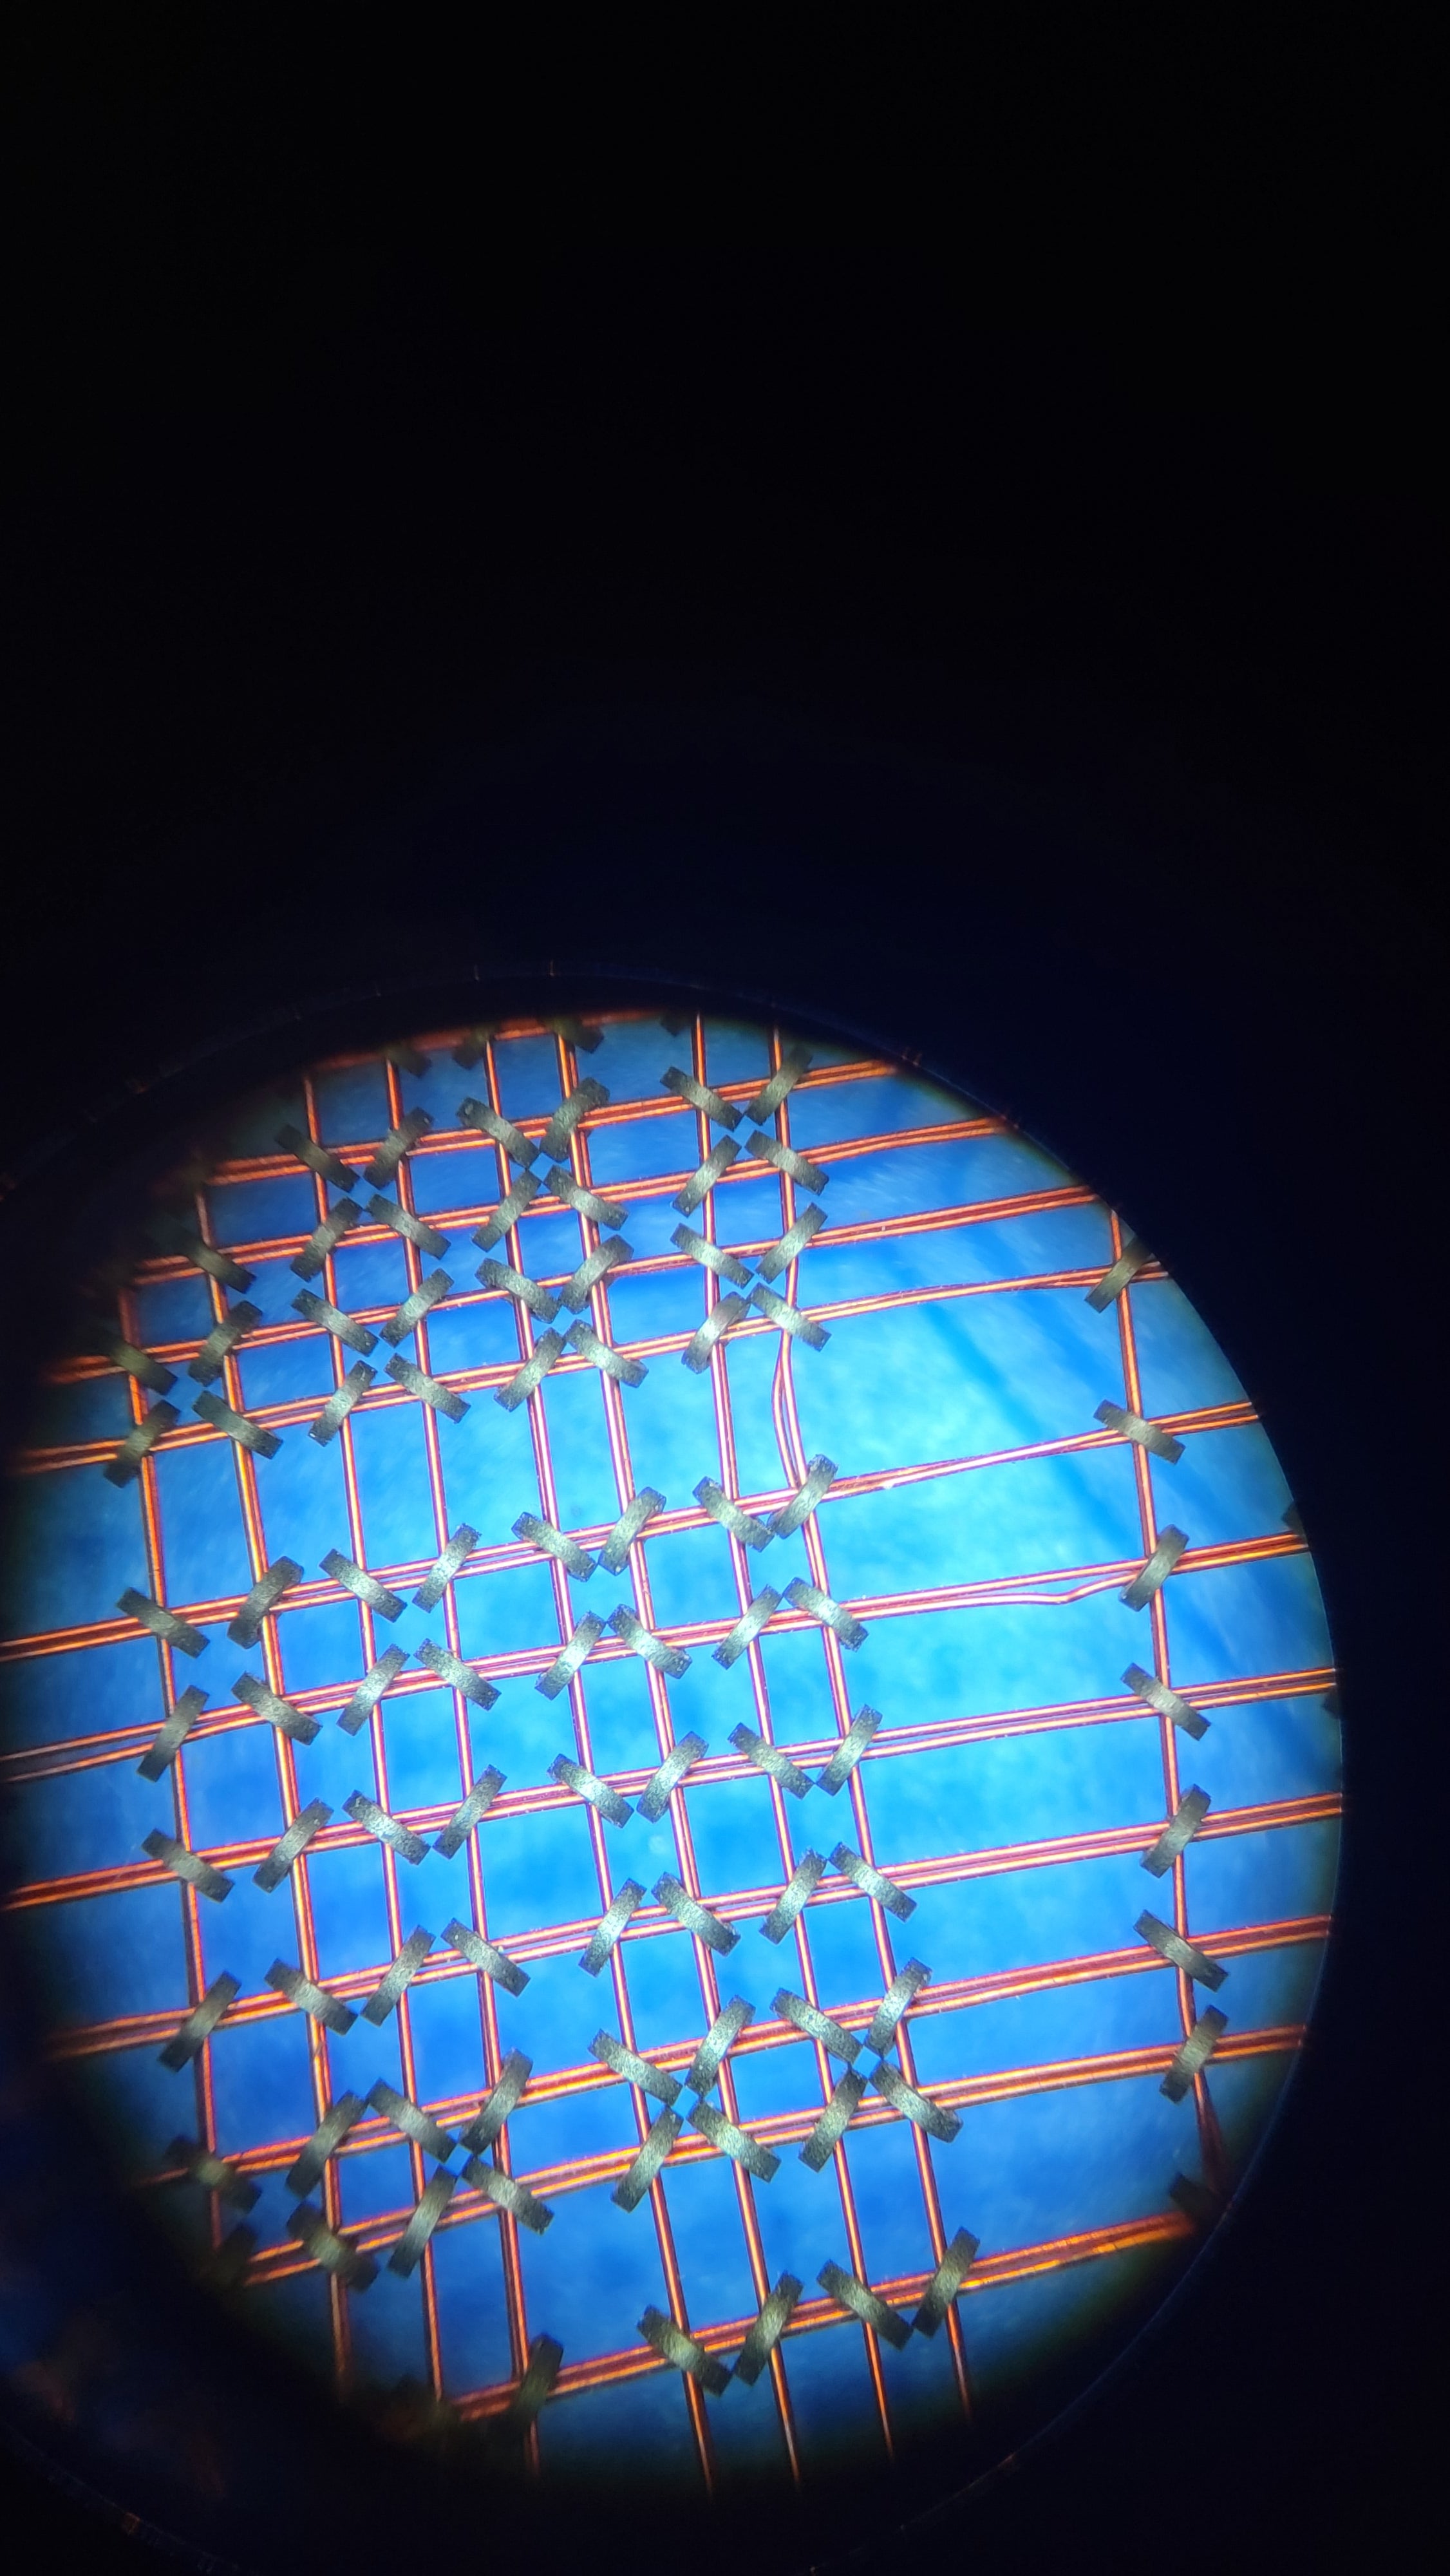 Core memory under a microscope